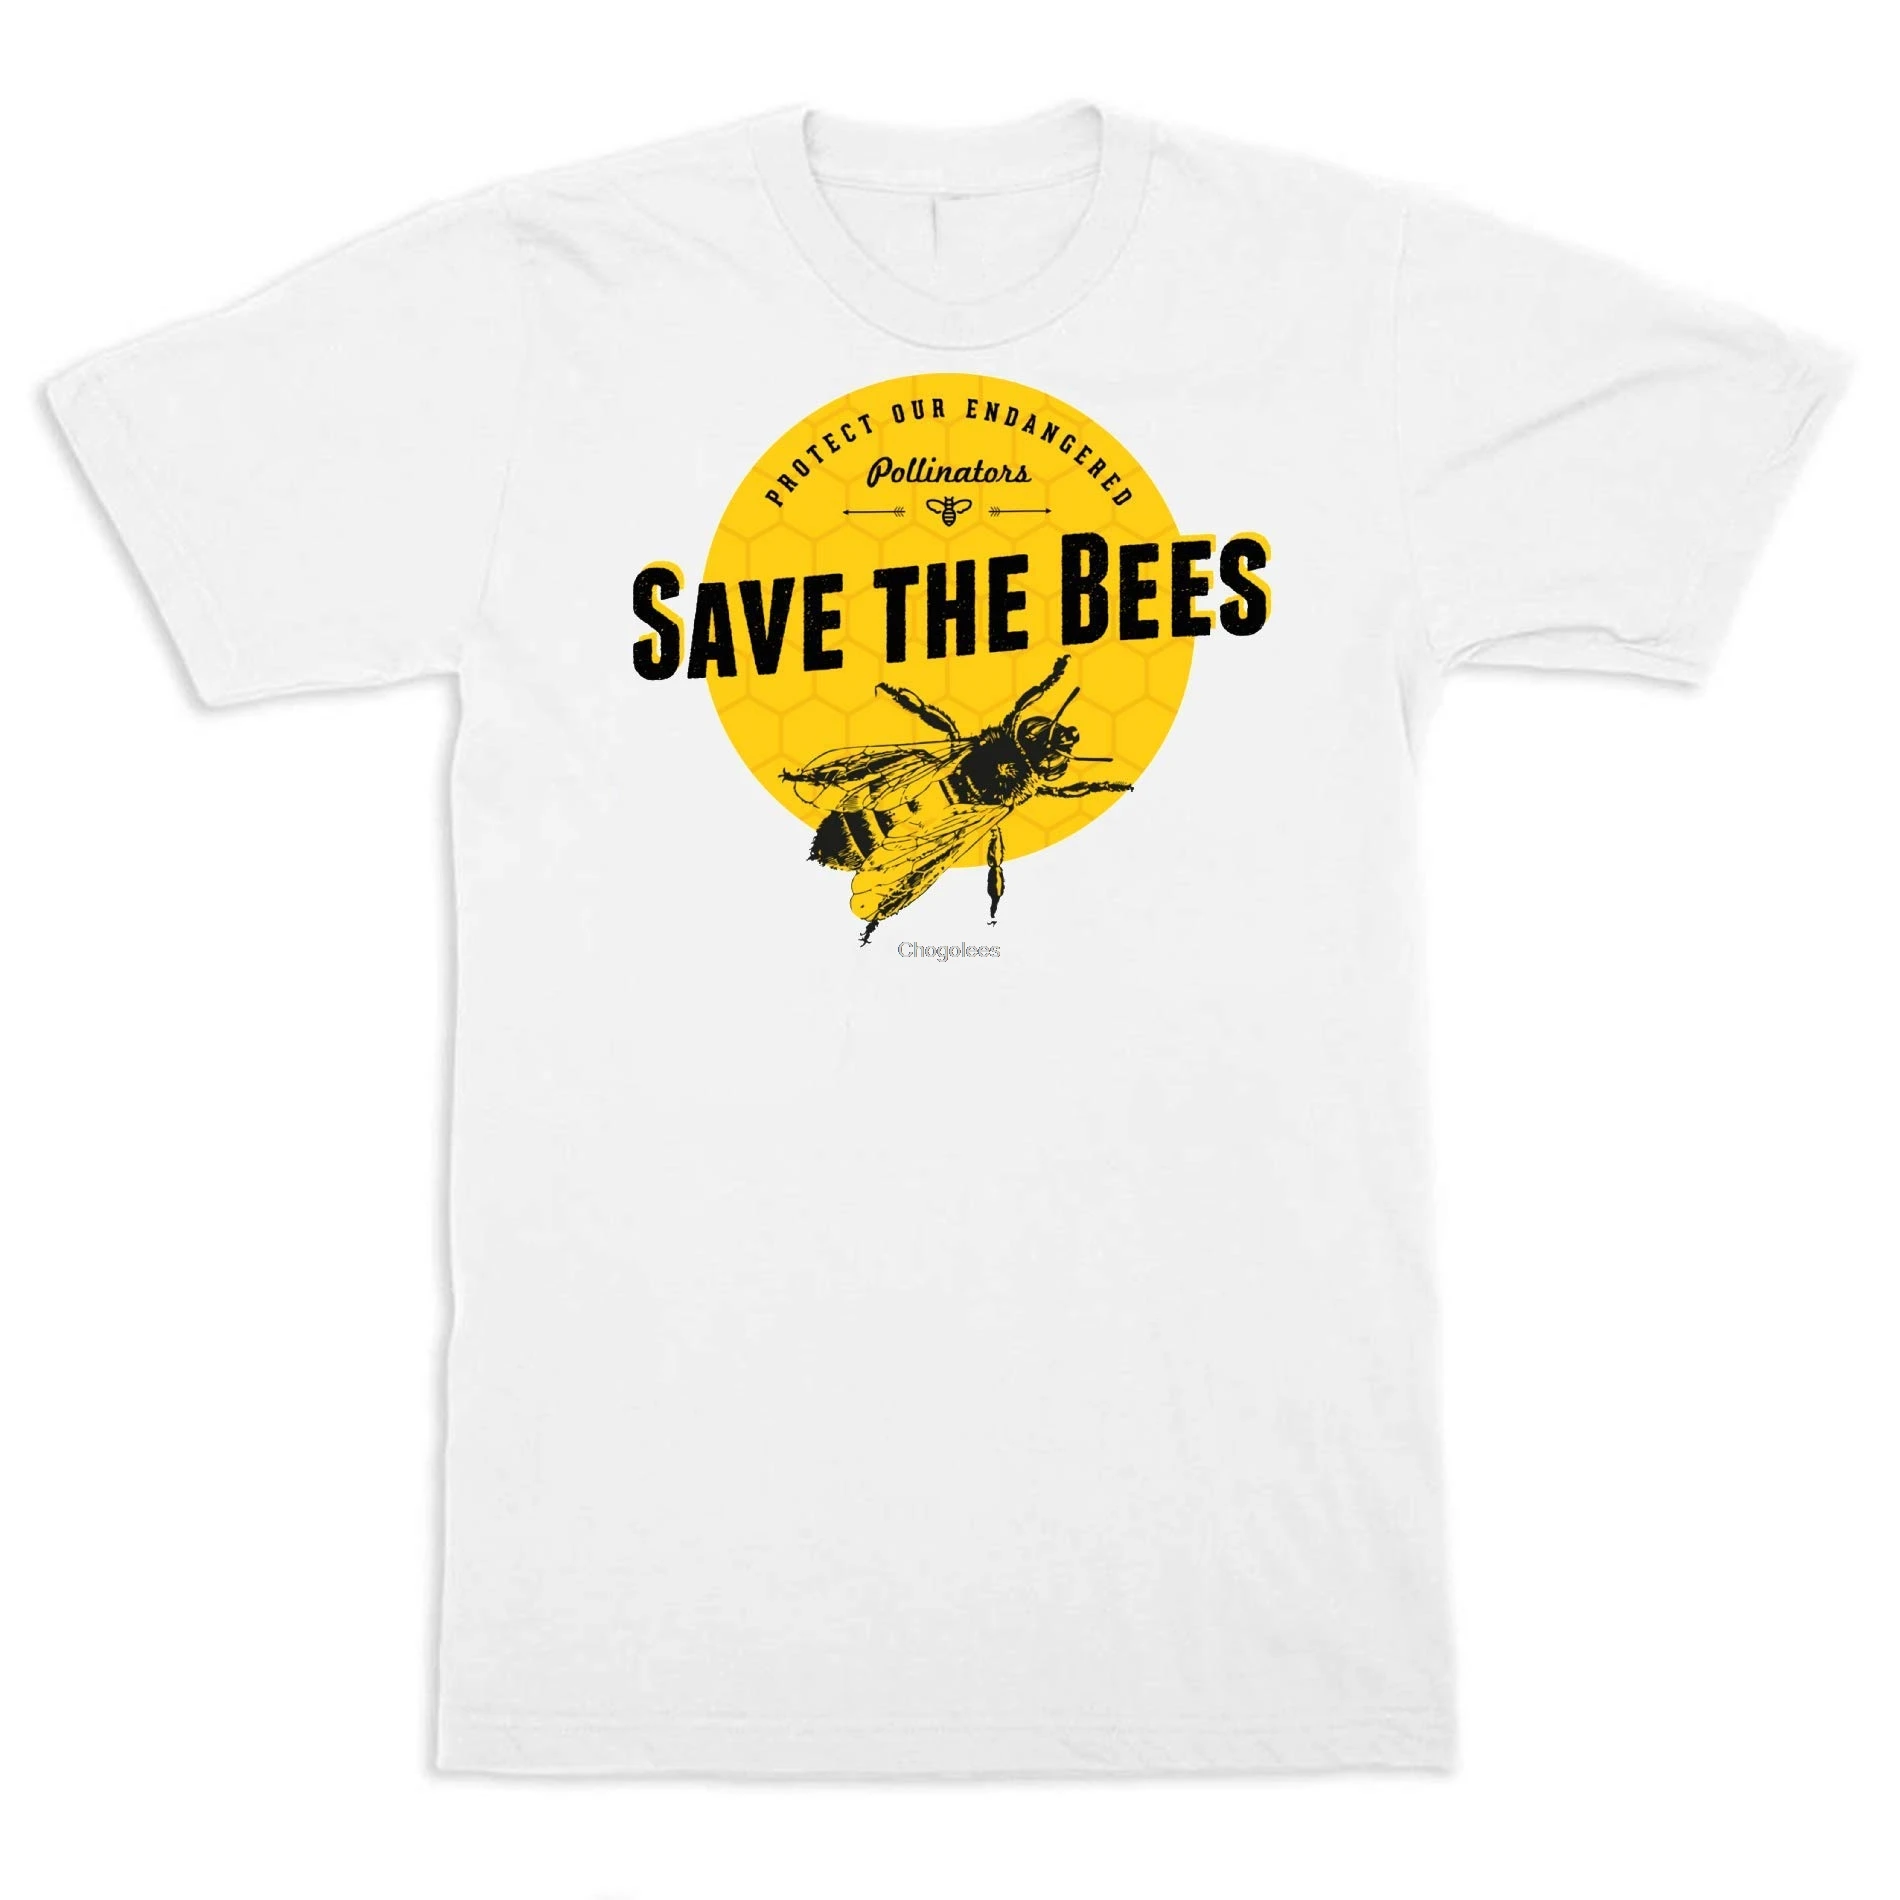 Рубашка LimsayK с надписью Save The Bees 58 дюймов подарок для мужчин и женщин |